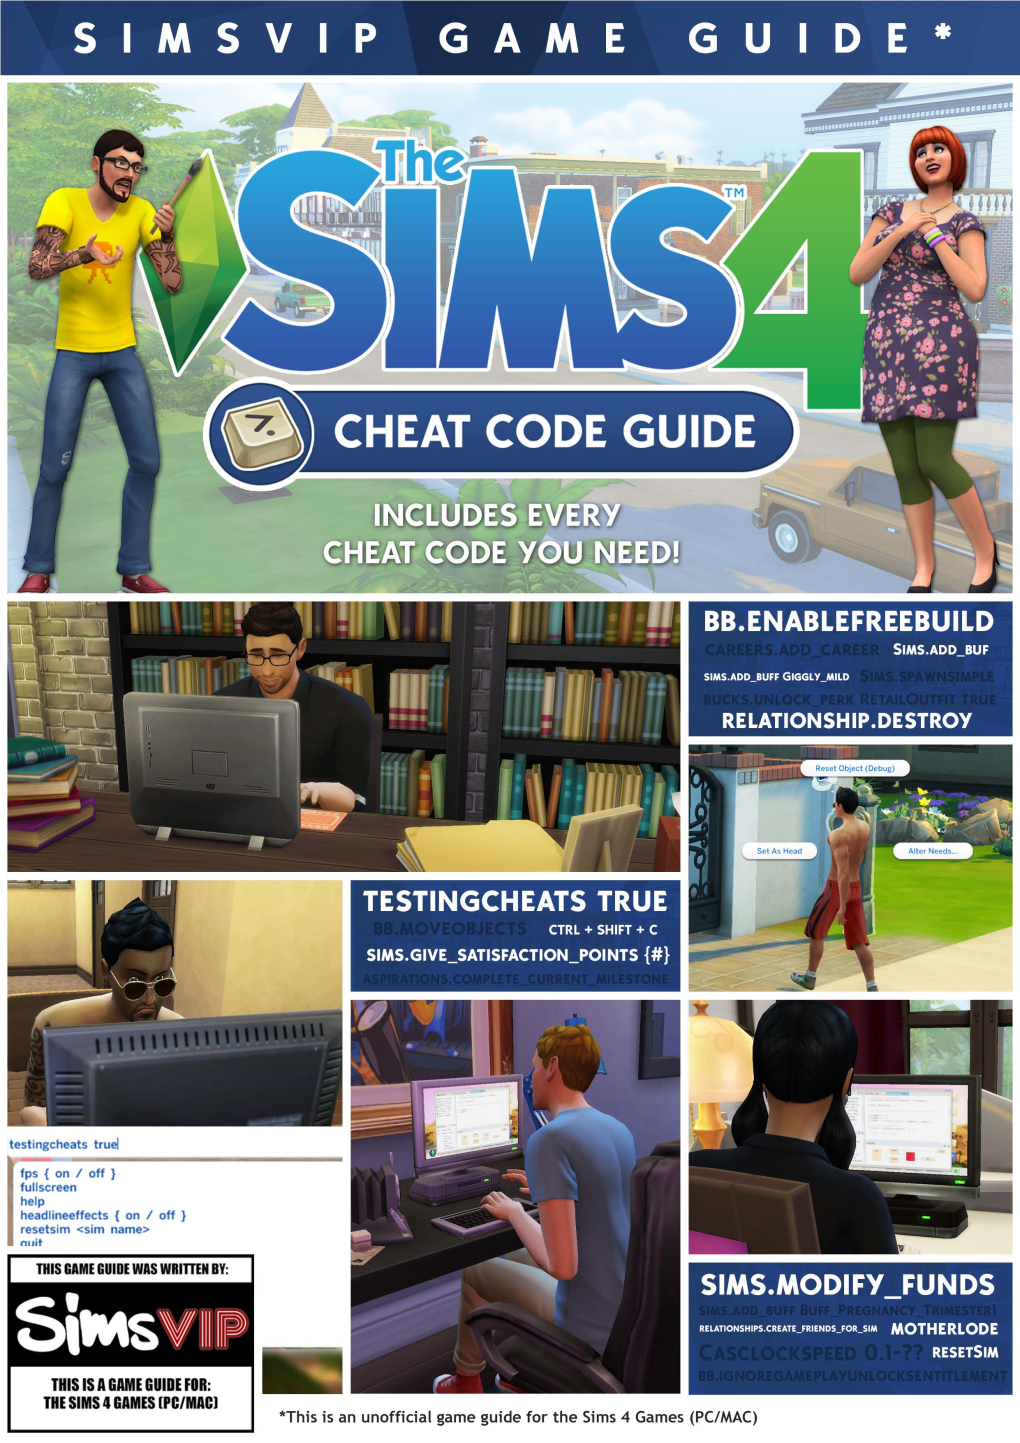 Simsvip Game Guide*